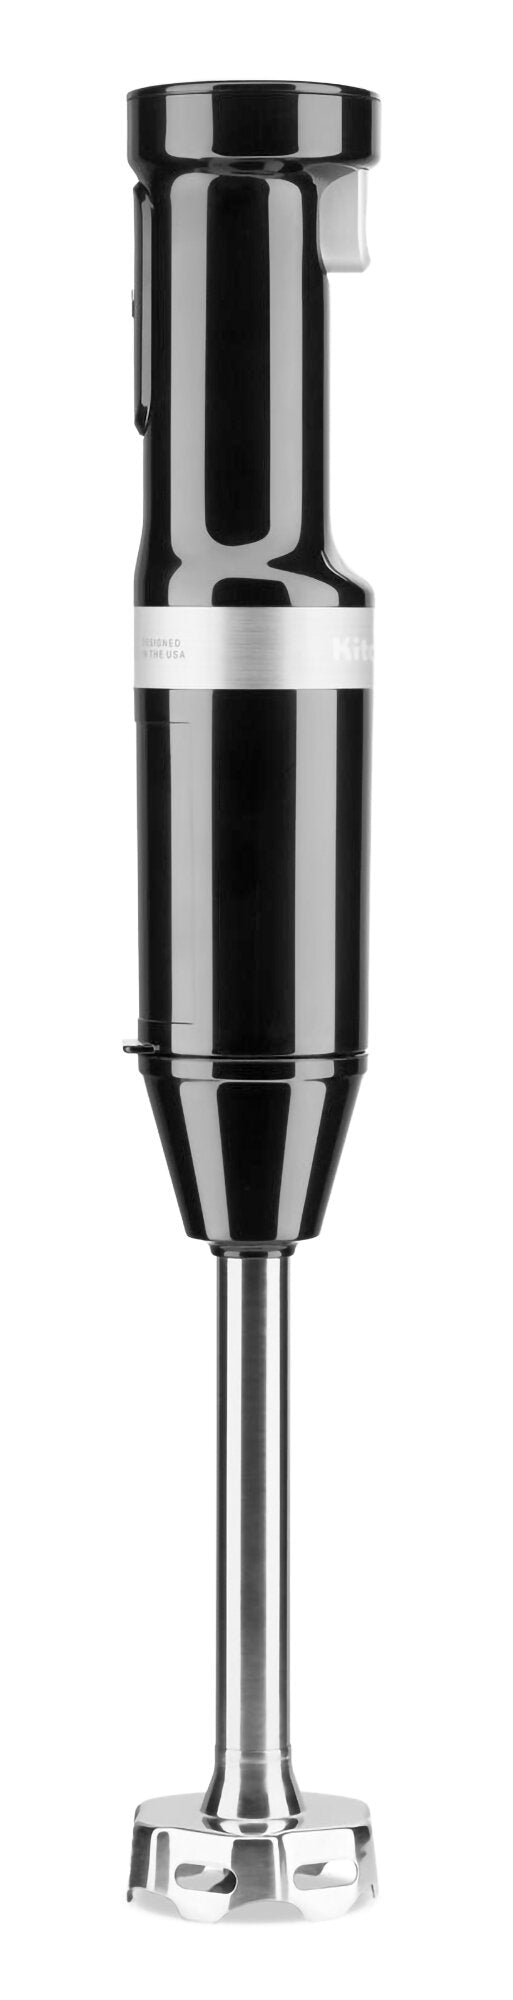 KitchenAid Variable Speed Cordless Hand Blender - KHBBV53OB - Blender in Onyx Black